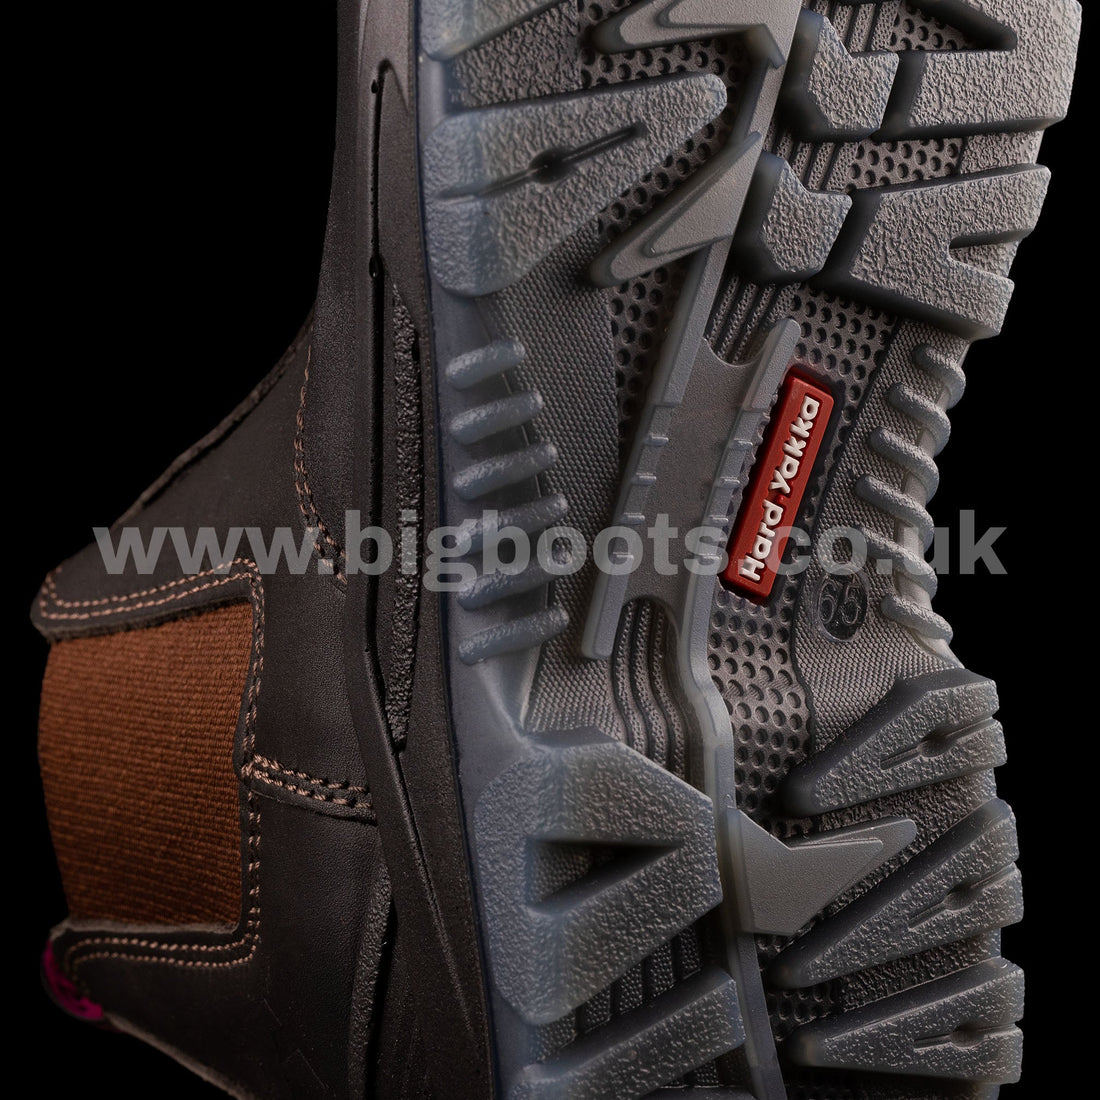 Hard Yakka Women's BANJO elastic sided Safety Boots - BIG Boots UK